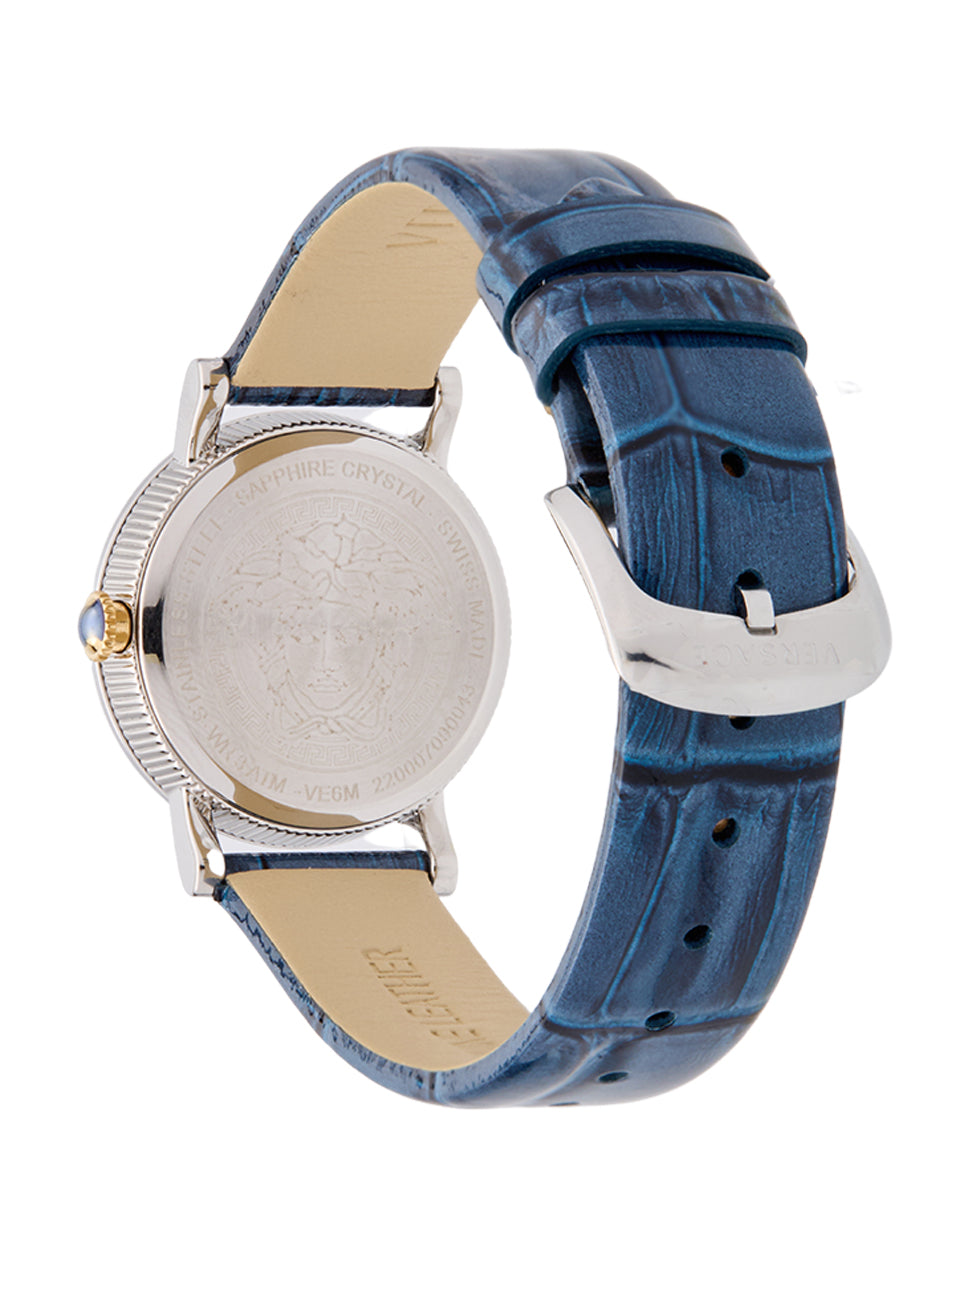 Versace Women's Petit Watch Blue/Silver 28mm VE6M00122